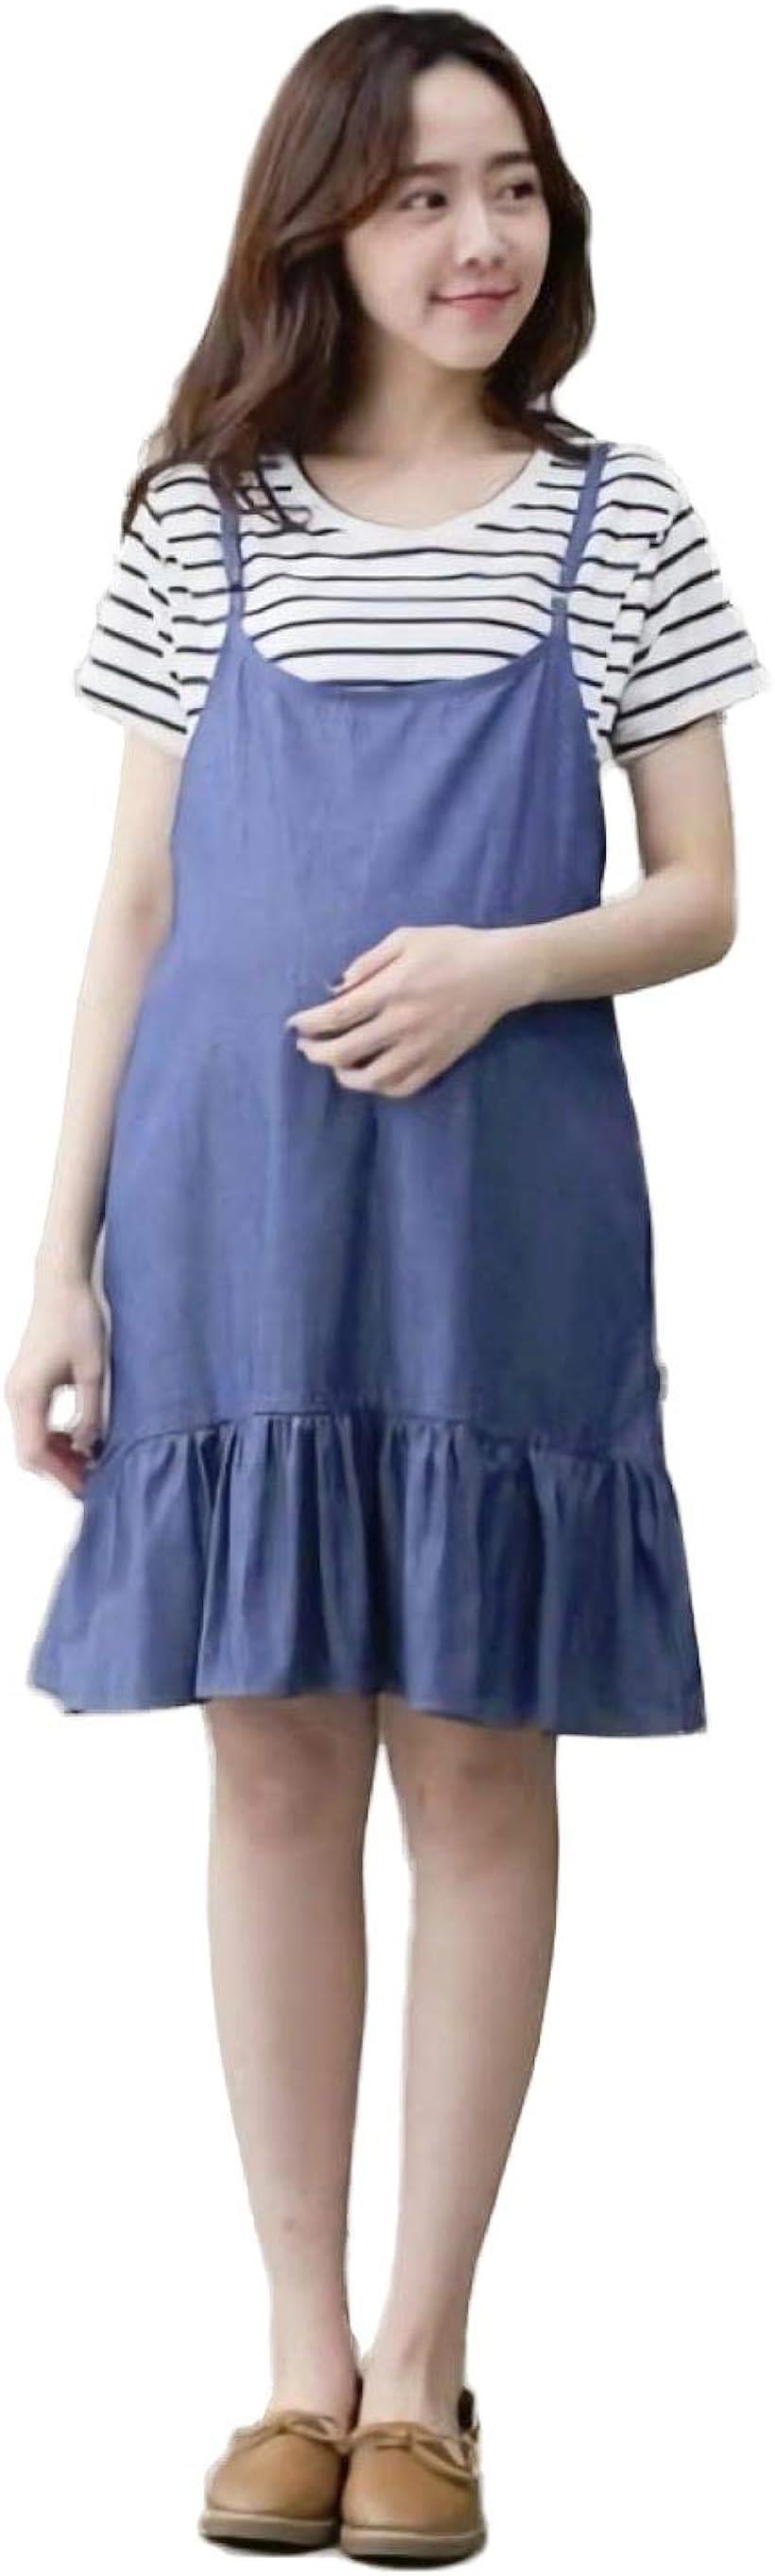 マタニティ ワンピースセット 妊婦 授乳服 産前産後 体型カバー シャツ デニム フリル( ブルー)